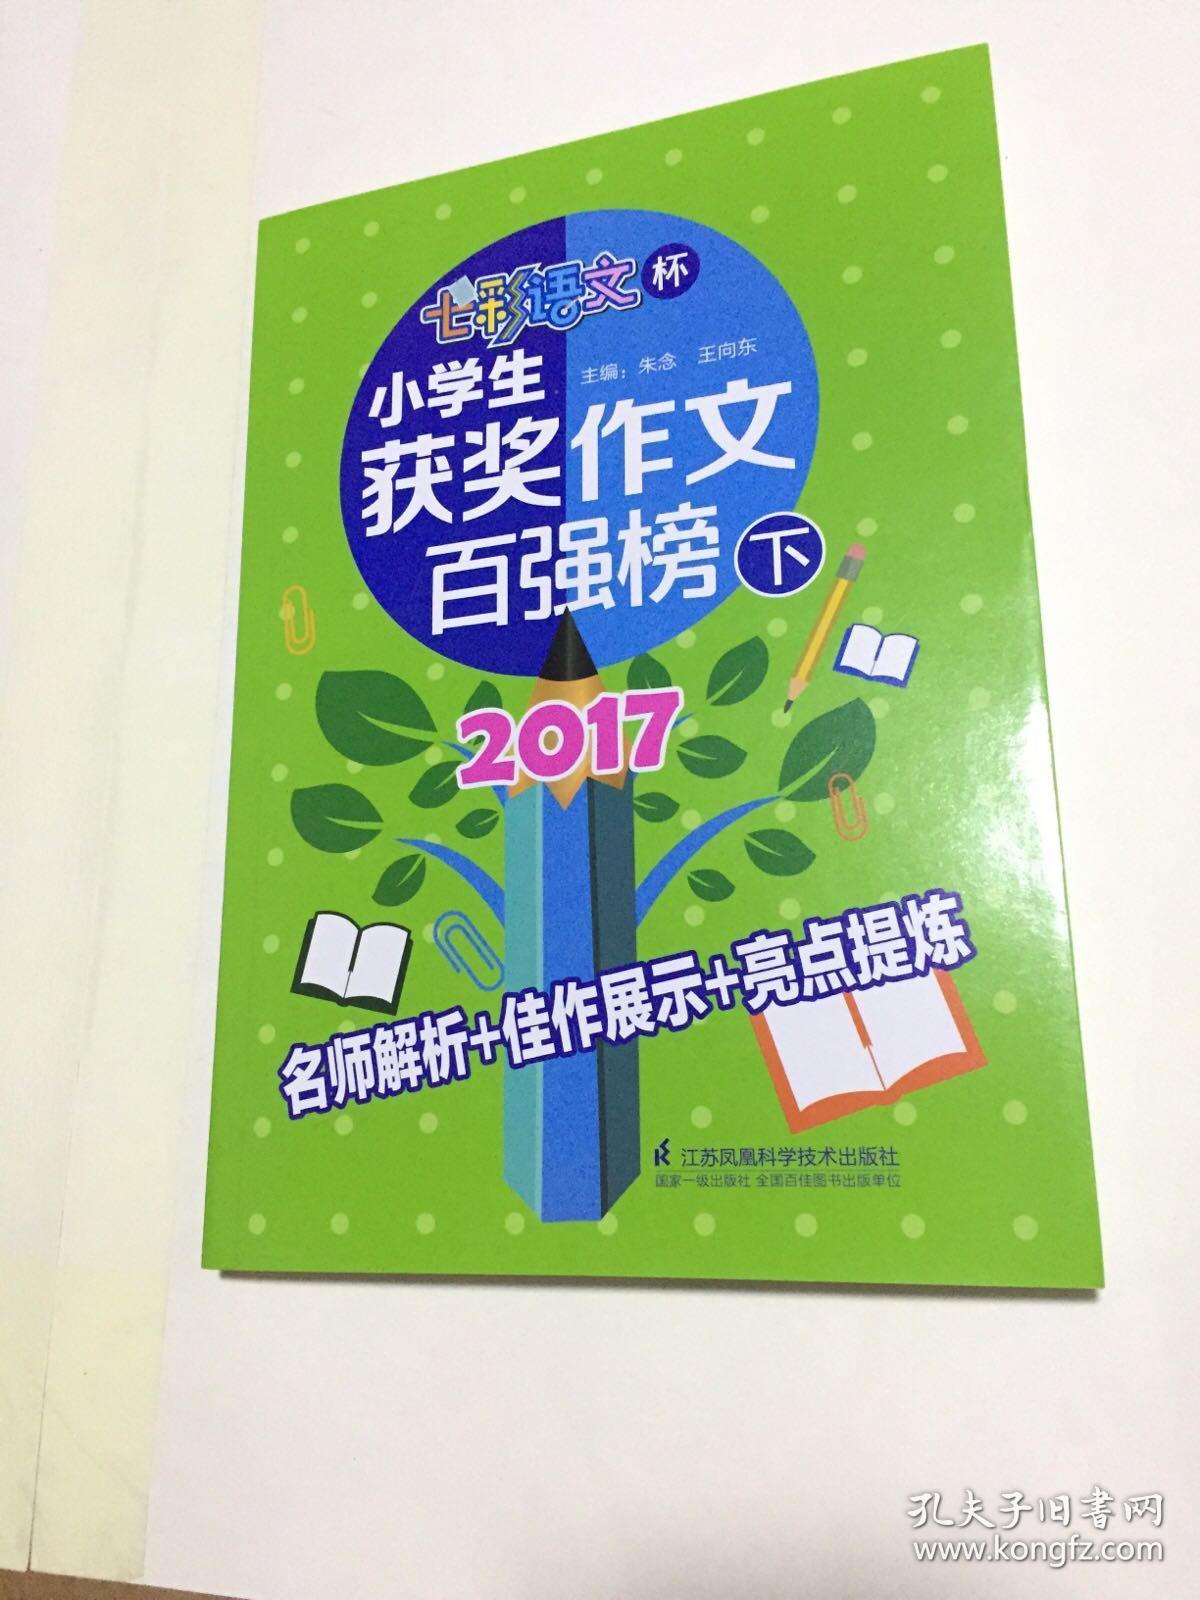 2017七彩语文杯 小学生获奖作文百强榜 下册